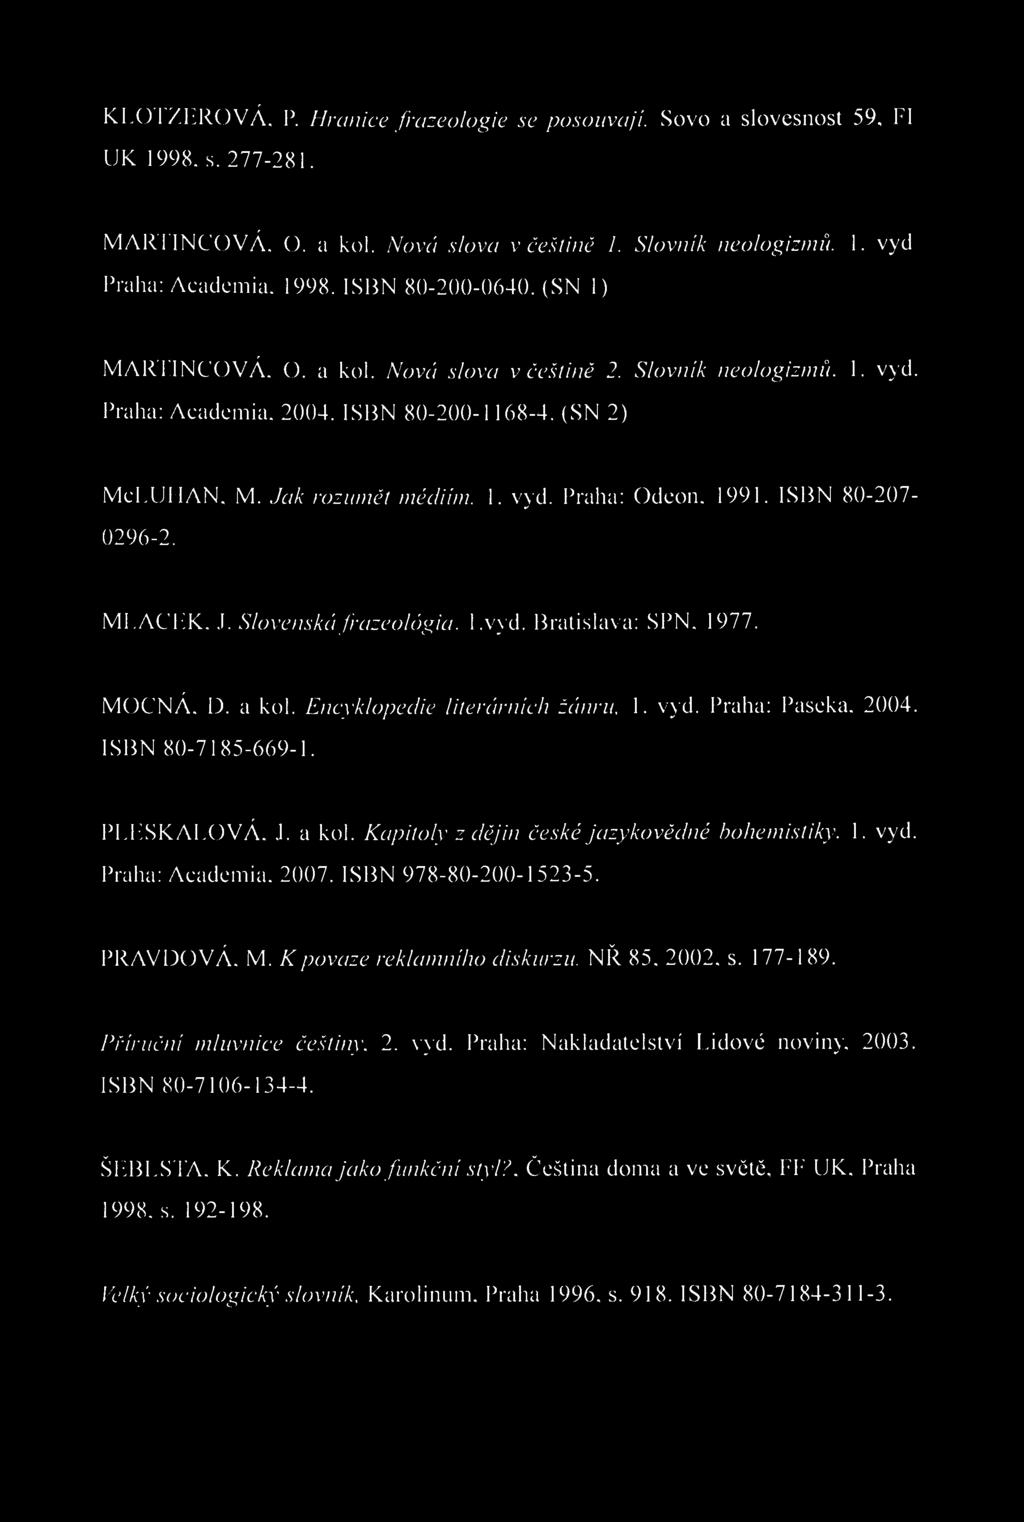 KLOTZLROVÁ. P. Hranice frazeologie se posouvají. Sovo a slovesnost 59, I I UK 1998. s. 277-281. MARTINCOVÁ. O. a kol. Nová slova v češtině 1. Slovník neologizmů. 1. vyd Praha: Academia. 1998. ISBN 80-200-0640.